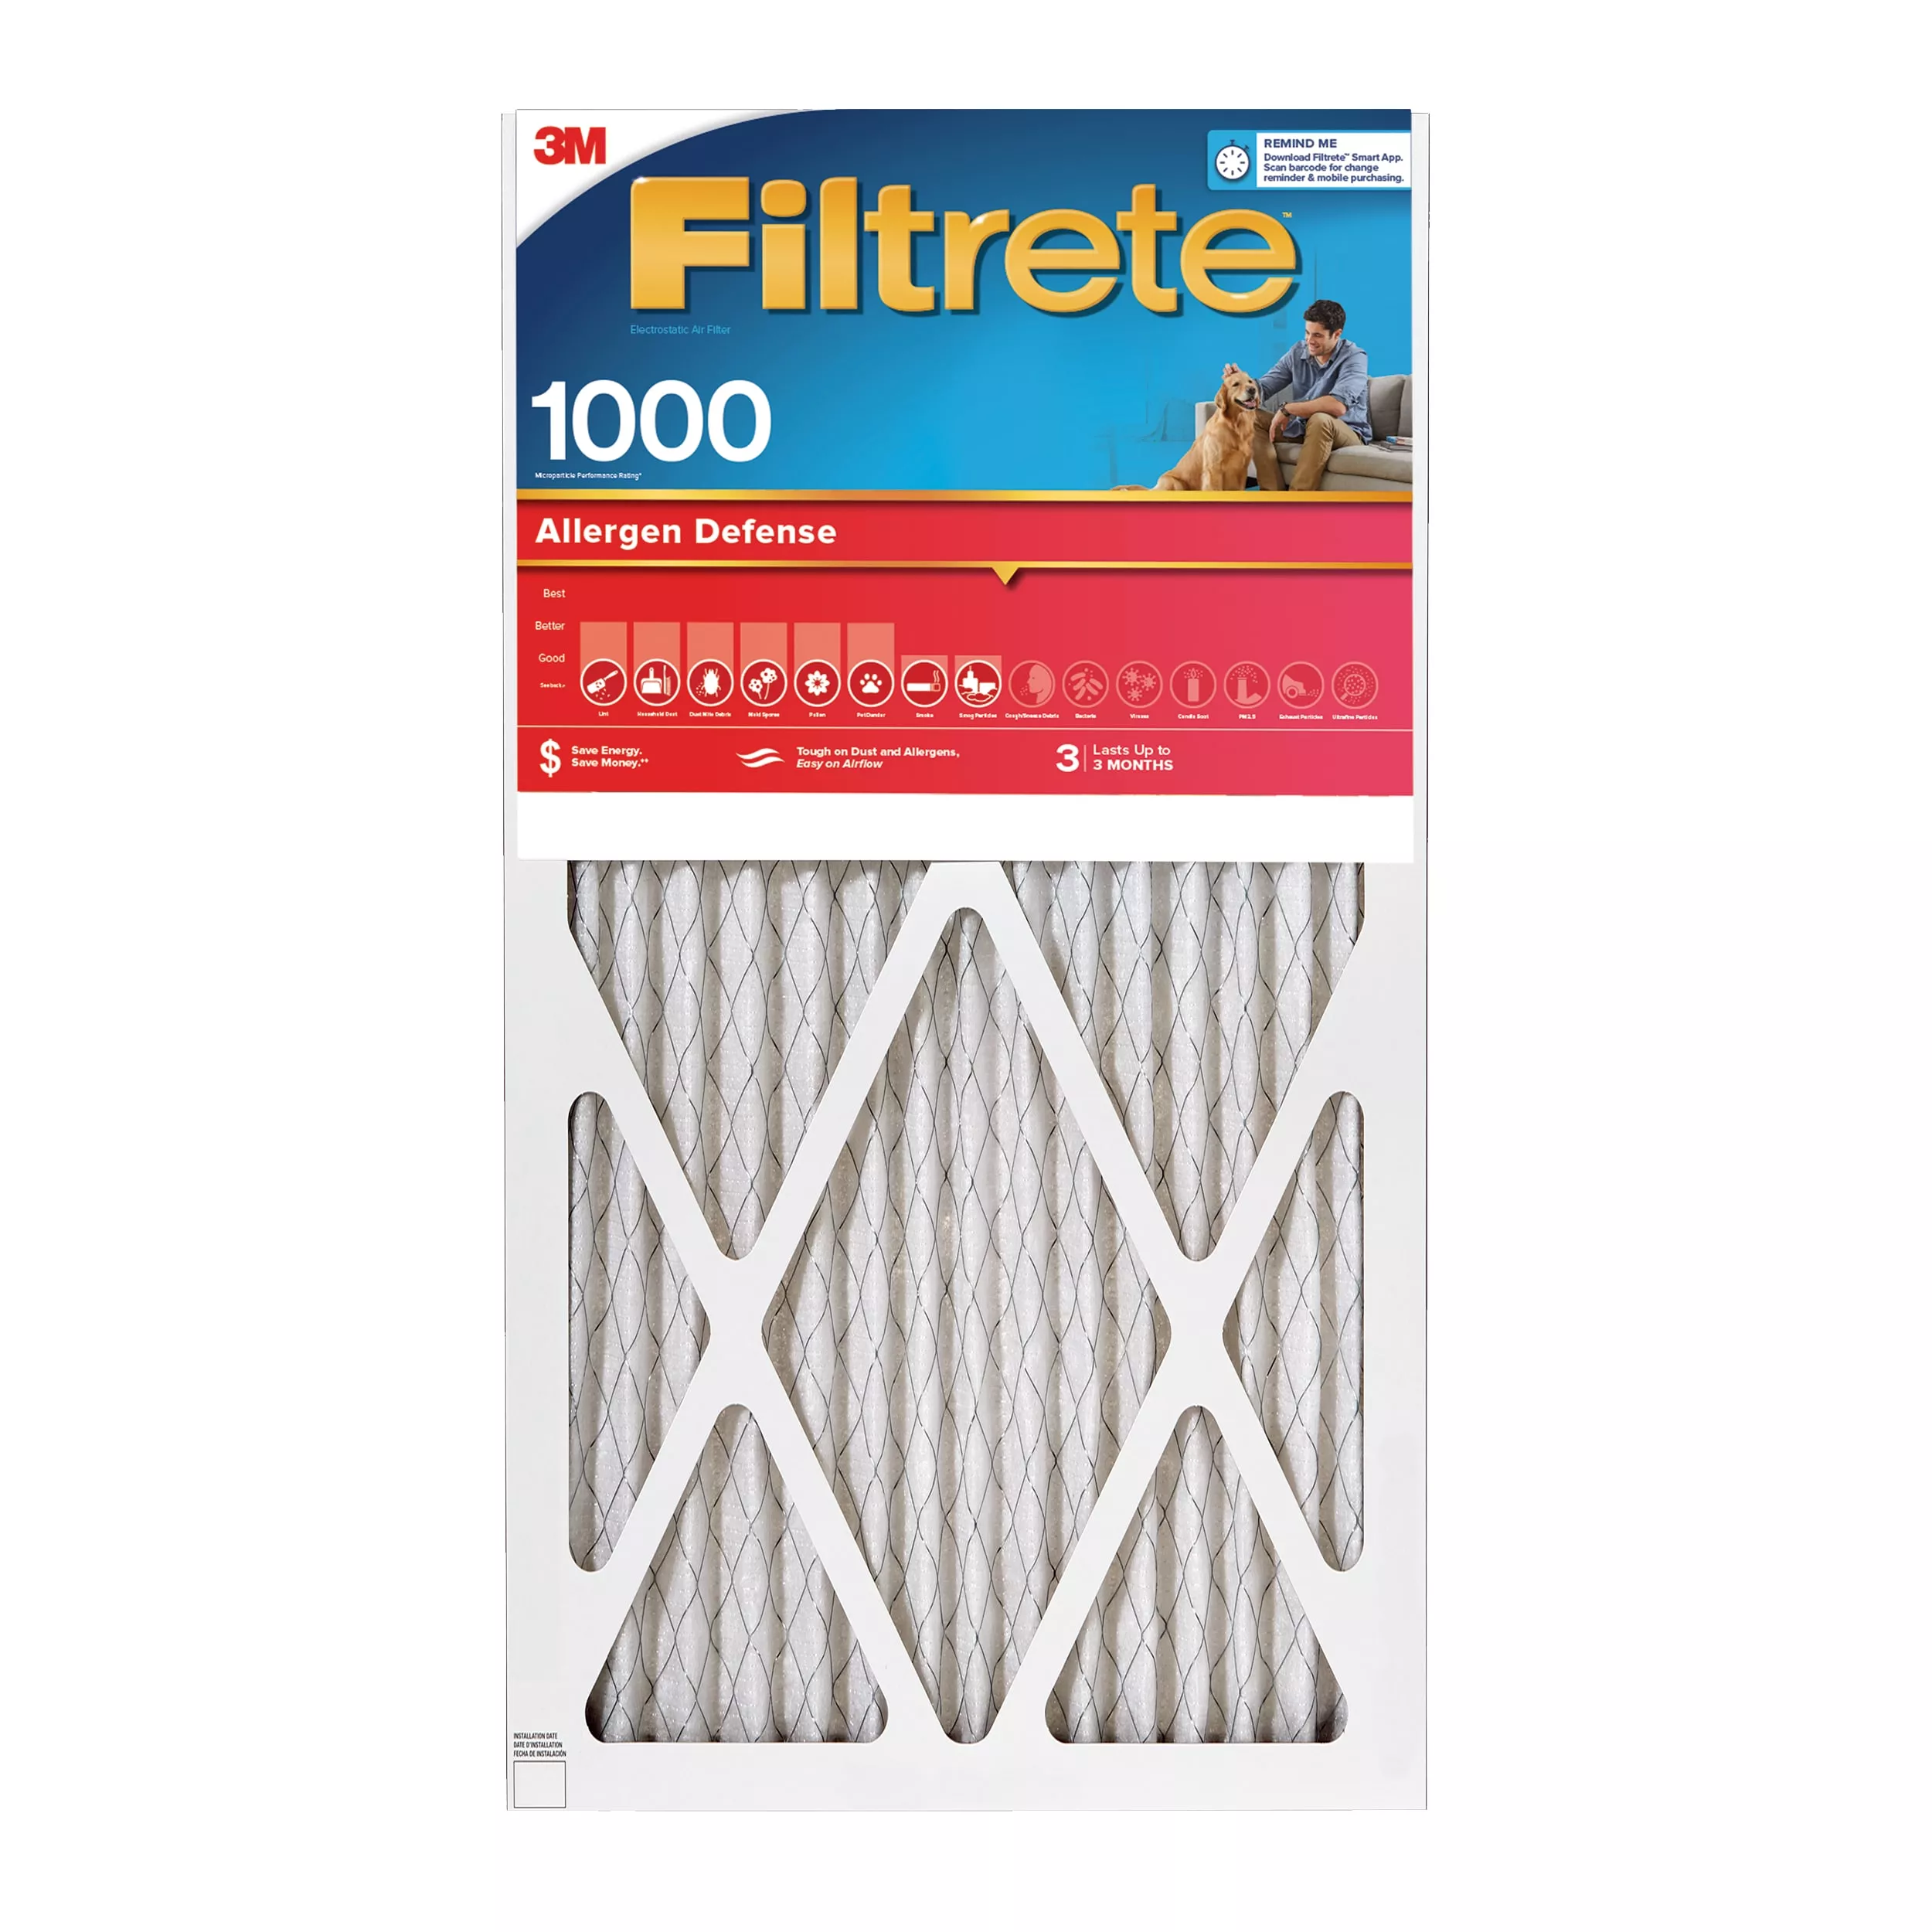 Filtrete™ Allergen Defense Air Filter, 1000 MPR, 9805-4, 14 in x 20 in x 1 in (35,5 cm x 50,8 cm x 2,5 cm)